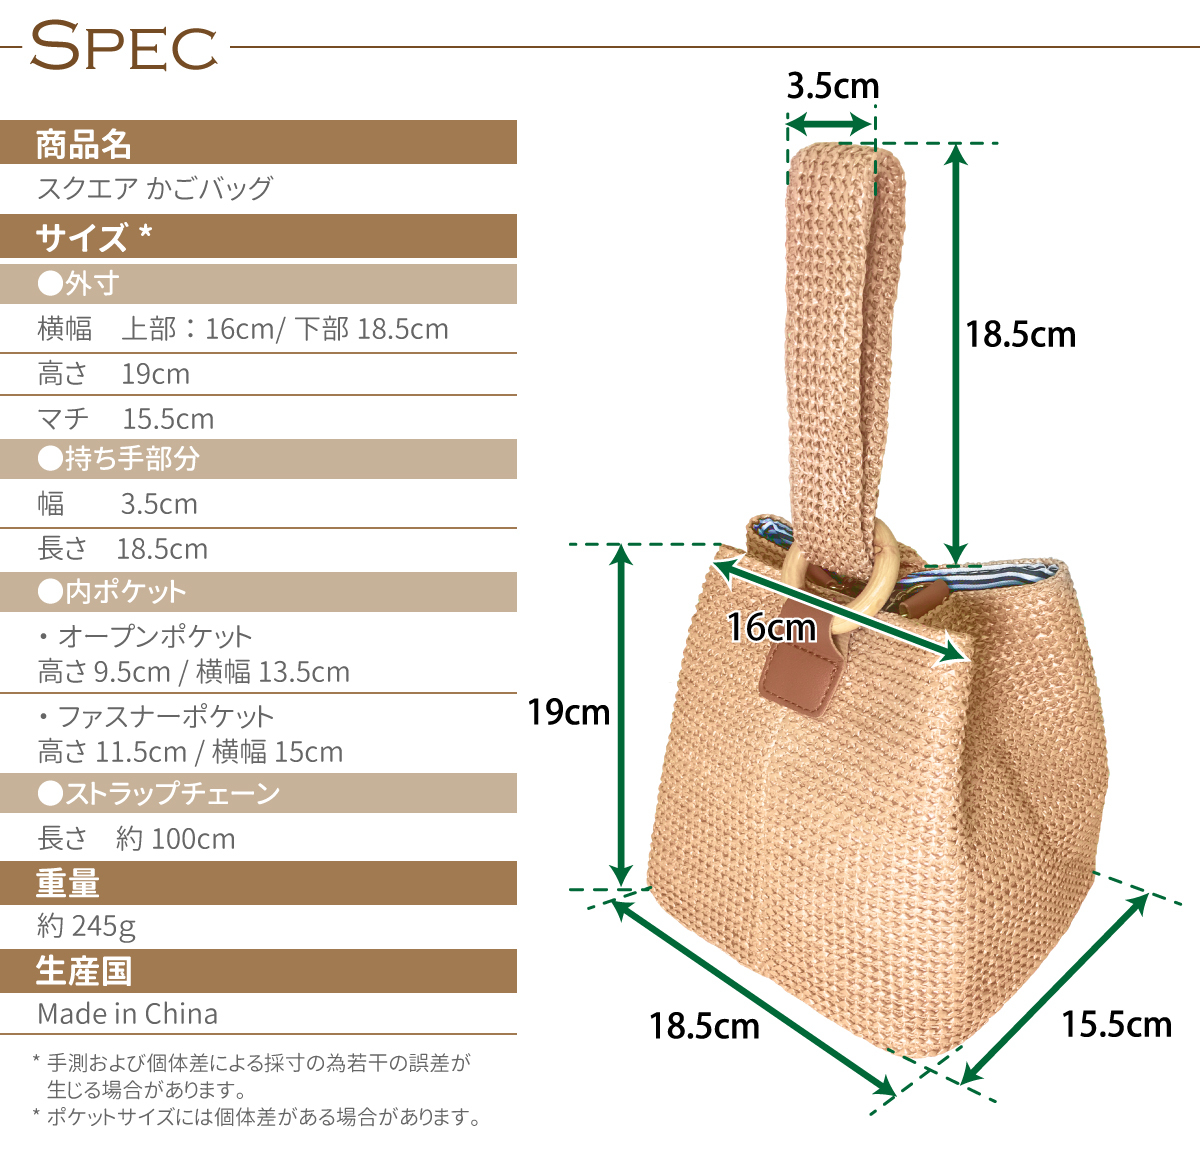  квадратное Mini корзина сумка модный симпатичный Mini 2way ручная сумочка сумка на плечо compact простой плетеный корзина способ лето юката сумка 